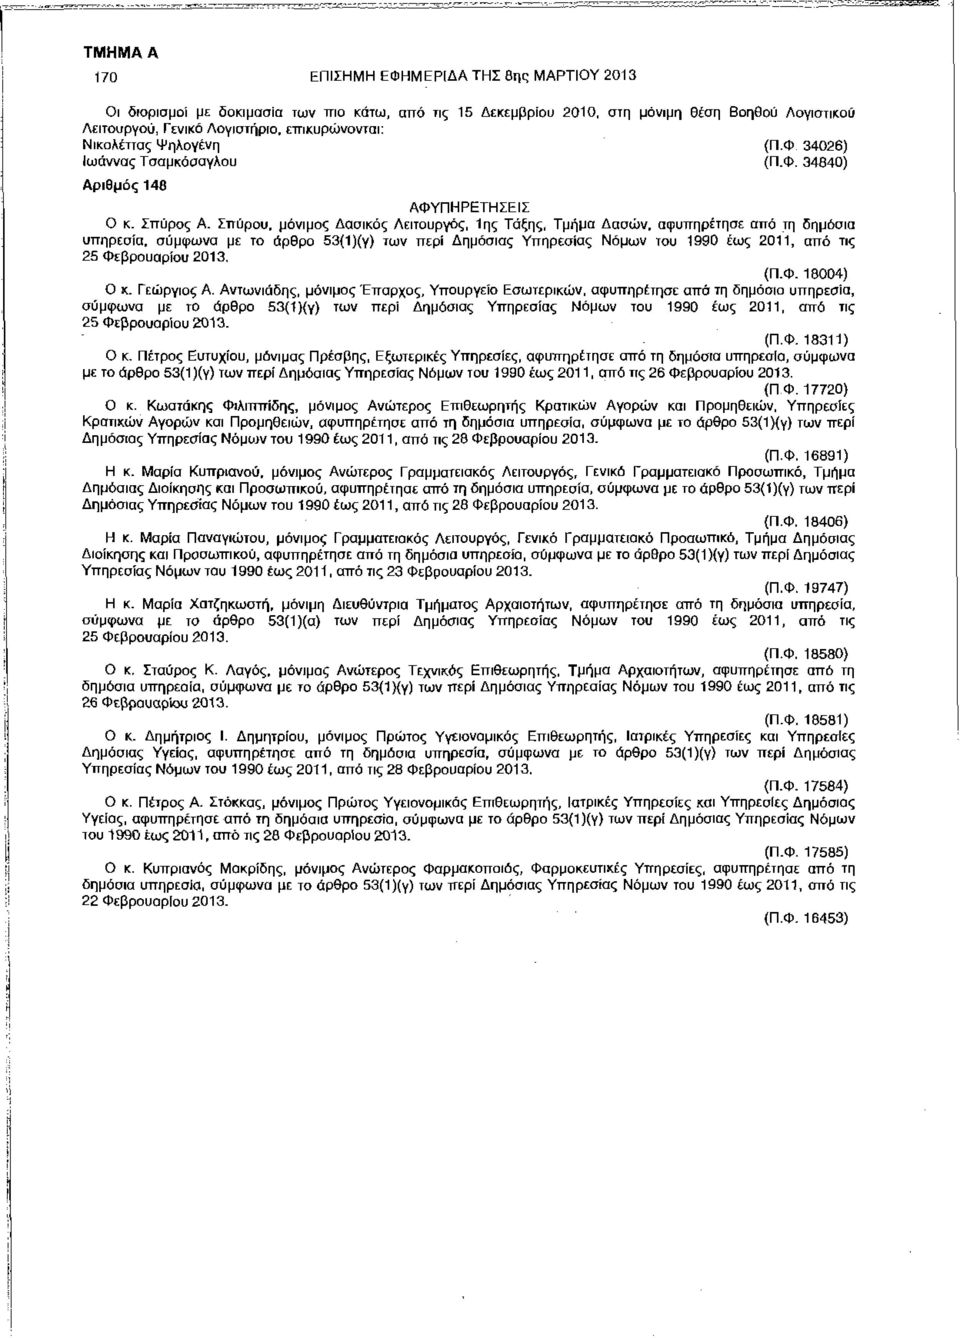 Σπύρου, μόνιμος Δασικός Λειτουργός, 1ης Τάξης, Τμήμα Δασών, αφυπηρέτησε από τη δημόσια υπηρεσία, σύμφωνα με το άρθρο 53{1)(γ) των περί Δημόσιας Υπηρεσίας Νόμων του 1990 έως 2011, από τις 25